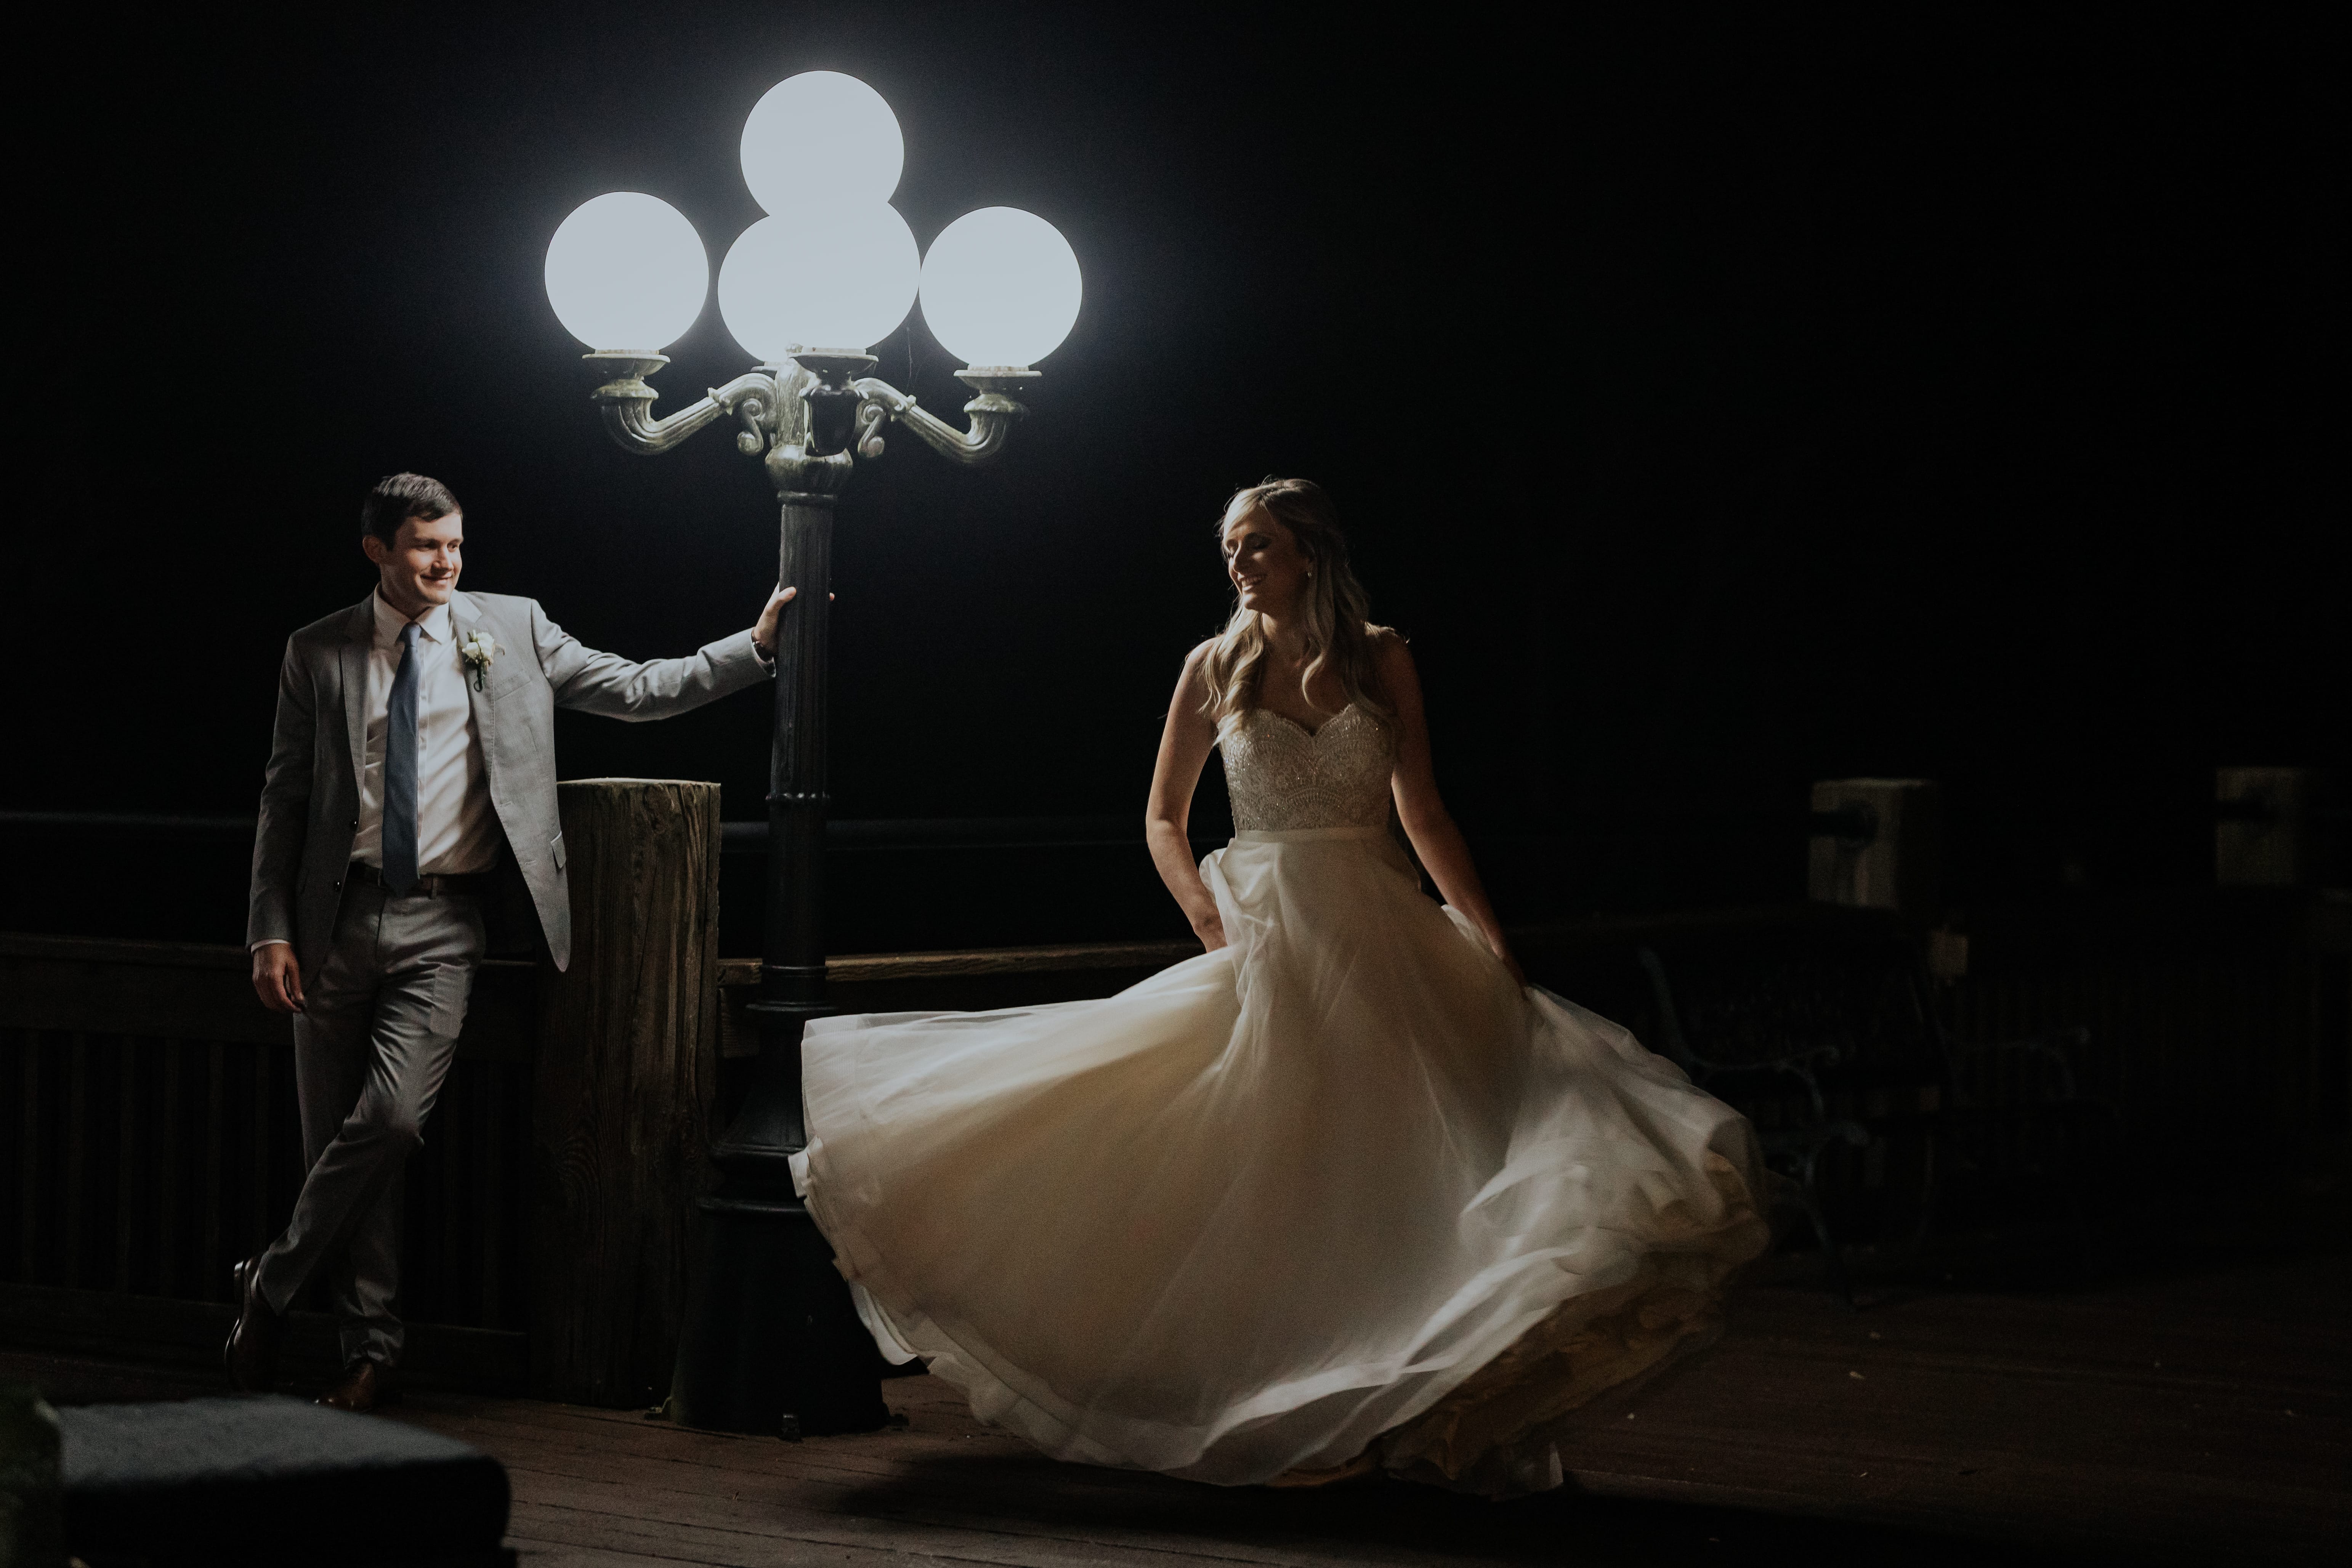 Atlanta Wedding Photographer Bride dancing Lamp Post